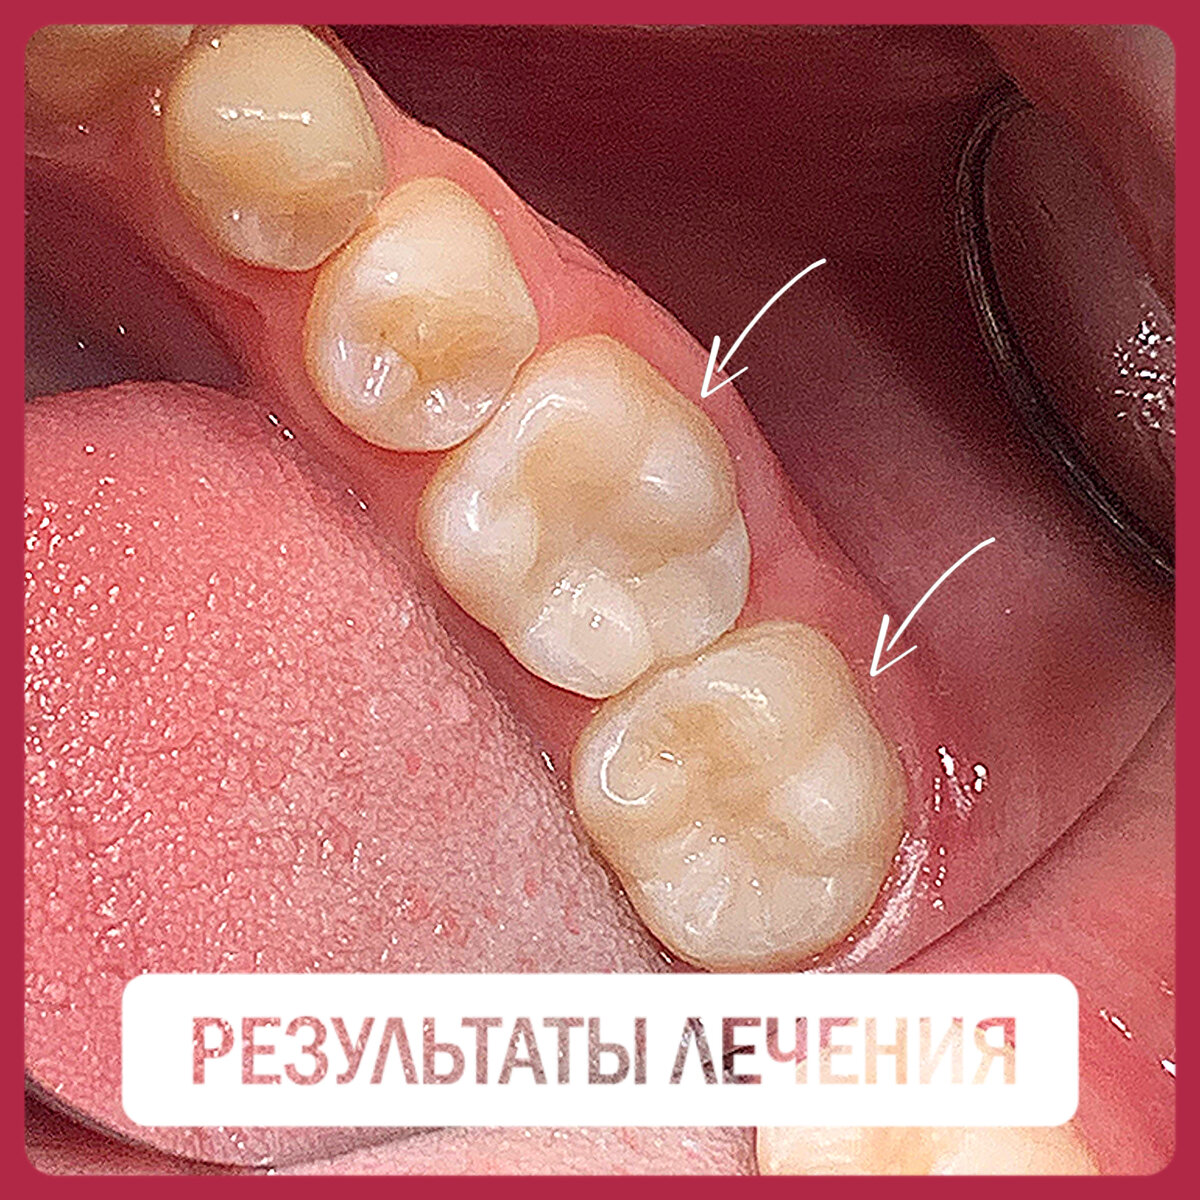 Лечение глубоко кариеса (гиперемия пульпы) 36, 37 зубов у юноши 13-ти лет. Стоимость лечение за два зуба составила 12300 р., время работы 1,5 часа. Работа врача стоматолога-терапевта, зам.гл.